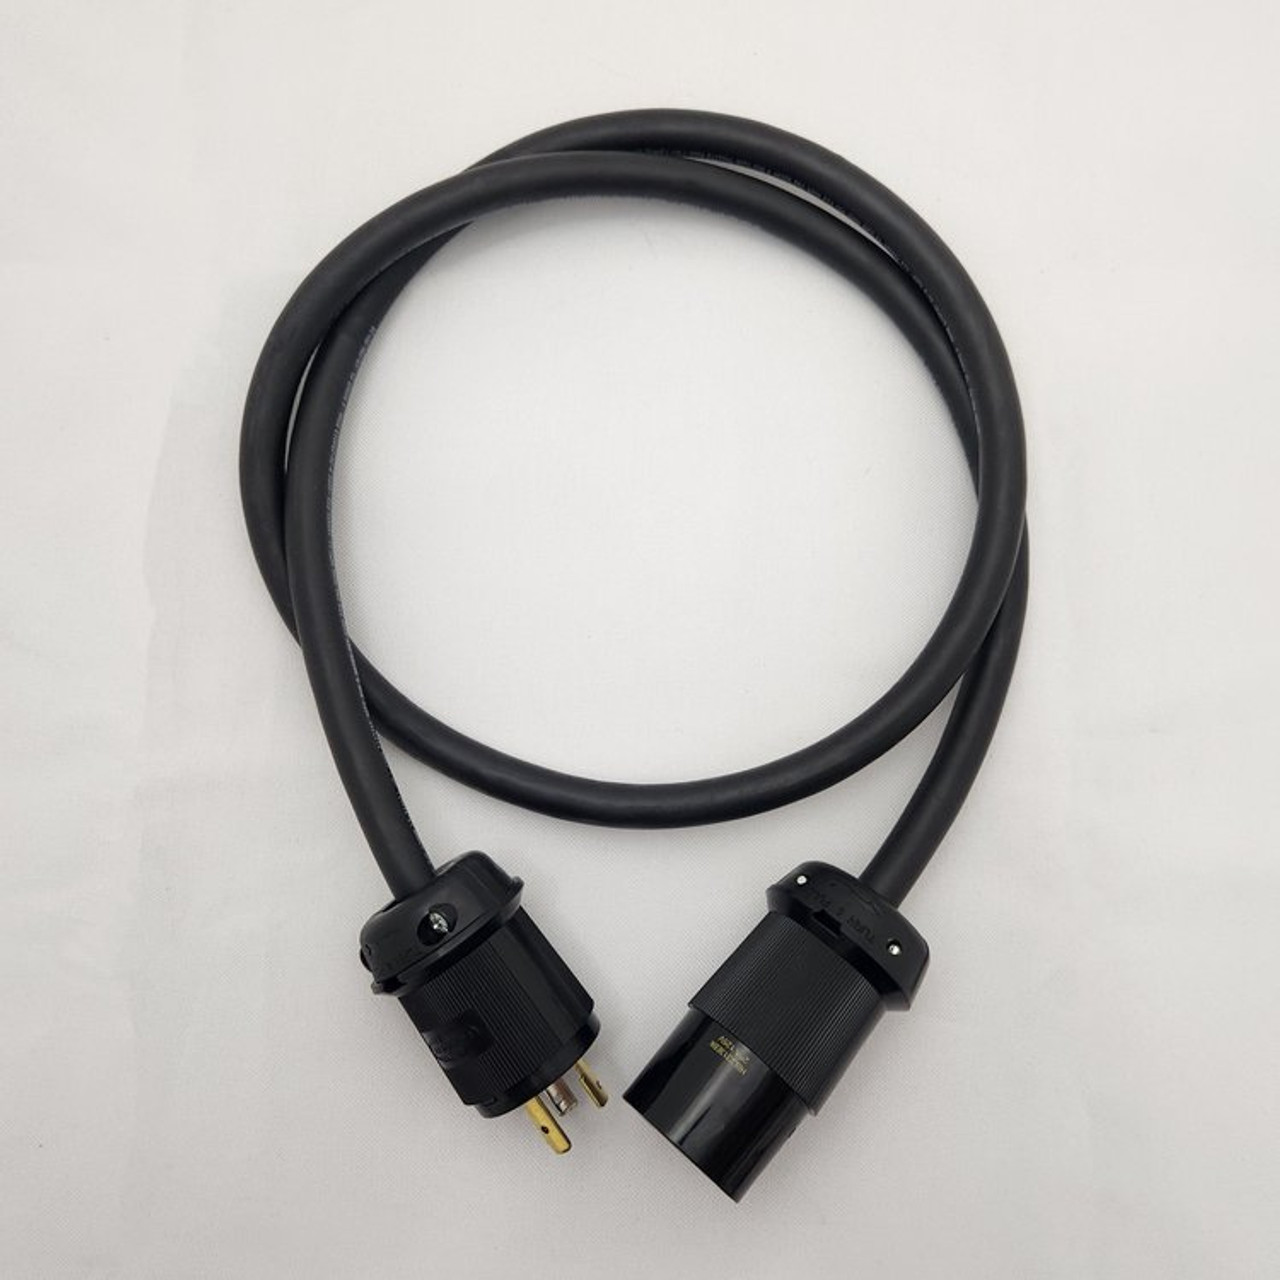 PlugsPlus 10 Foot Twist Lock L5-20 Extension Cable (X10TL)